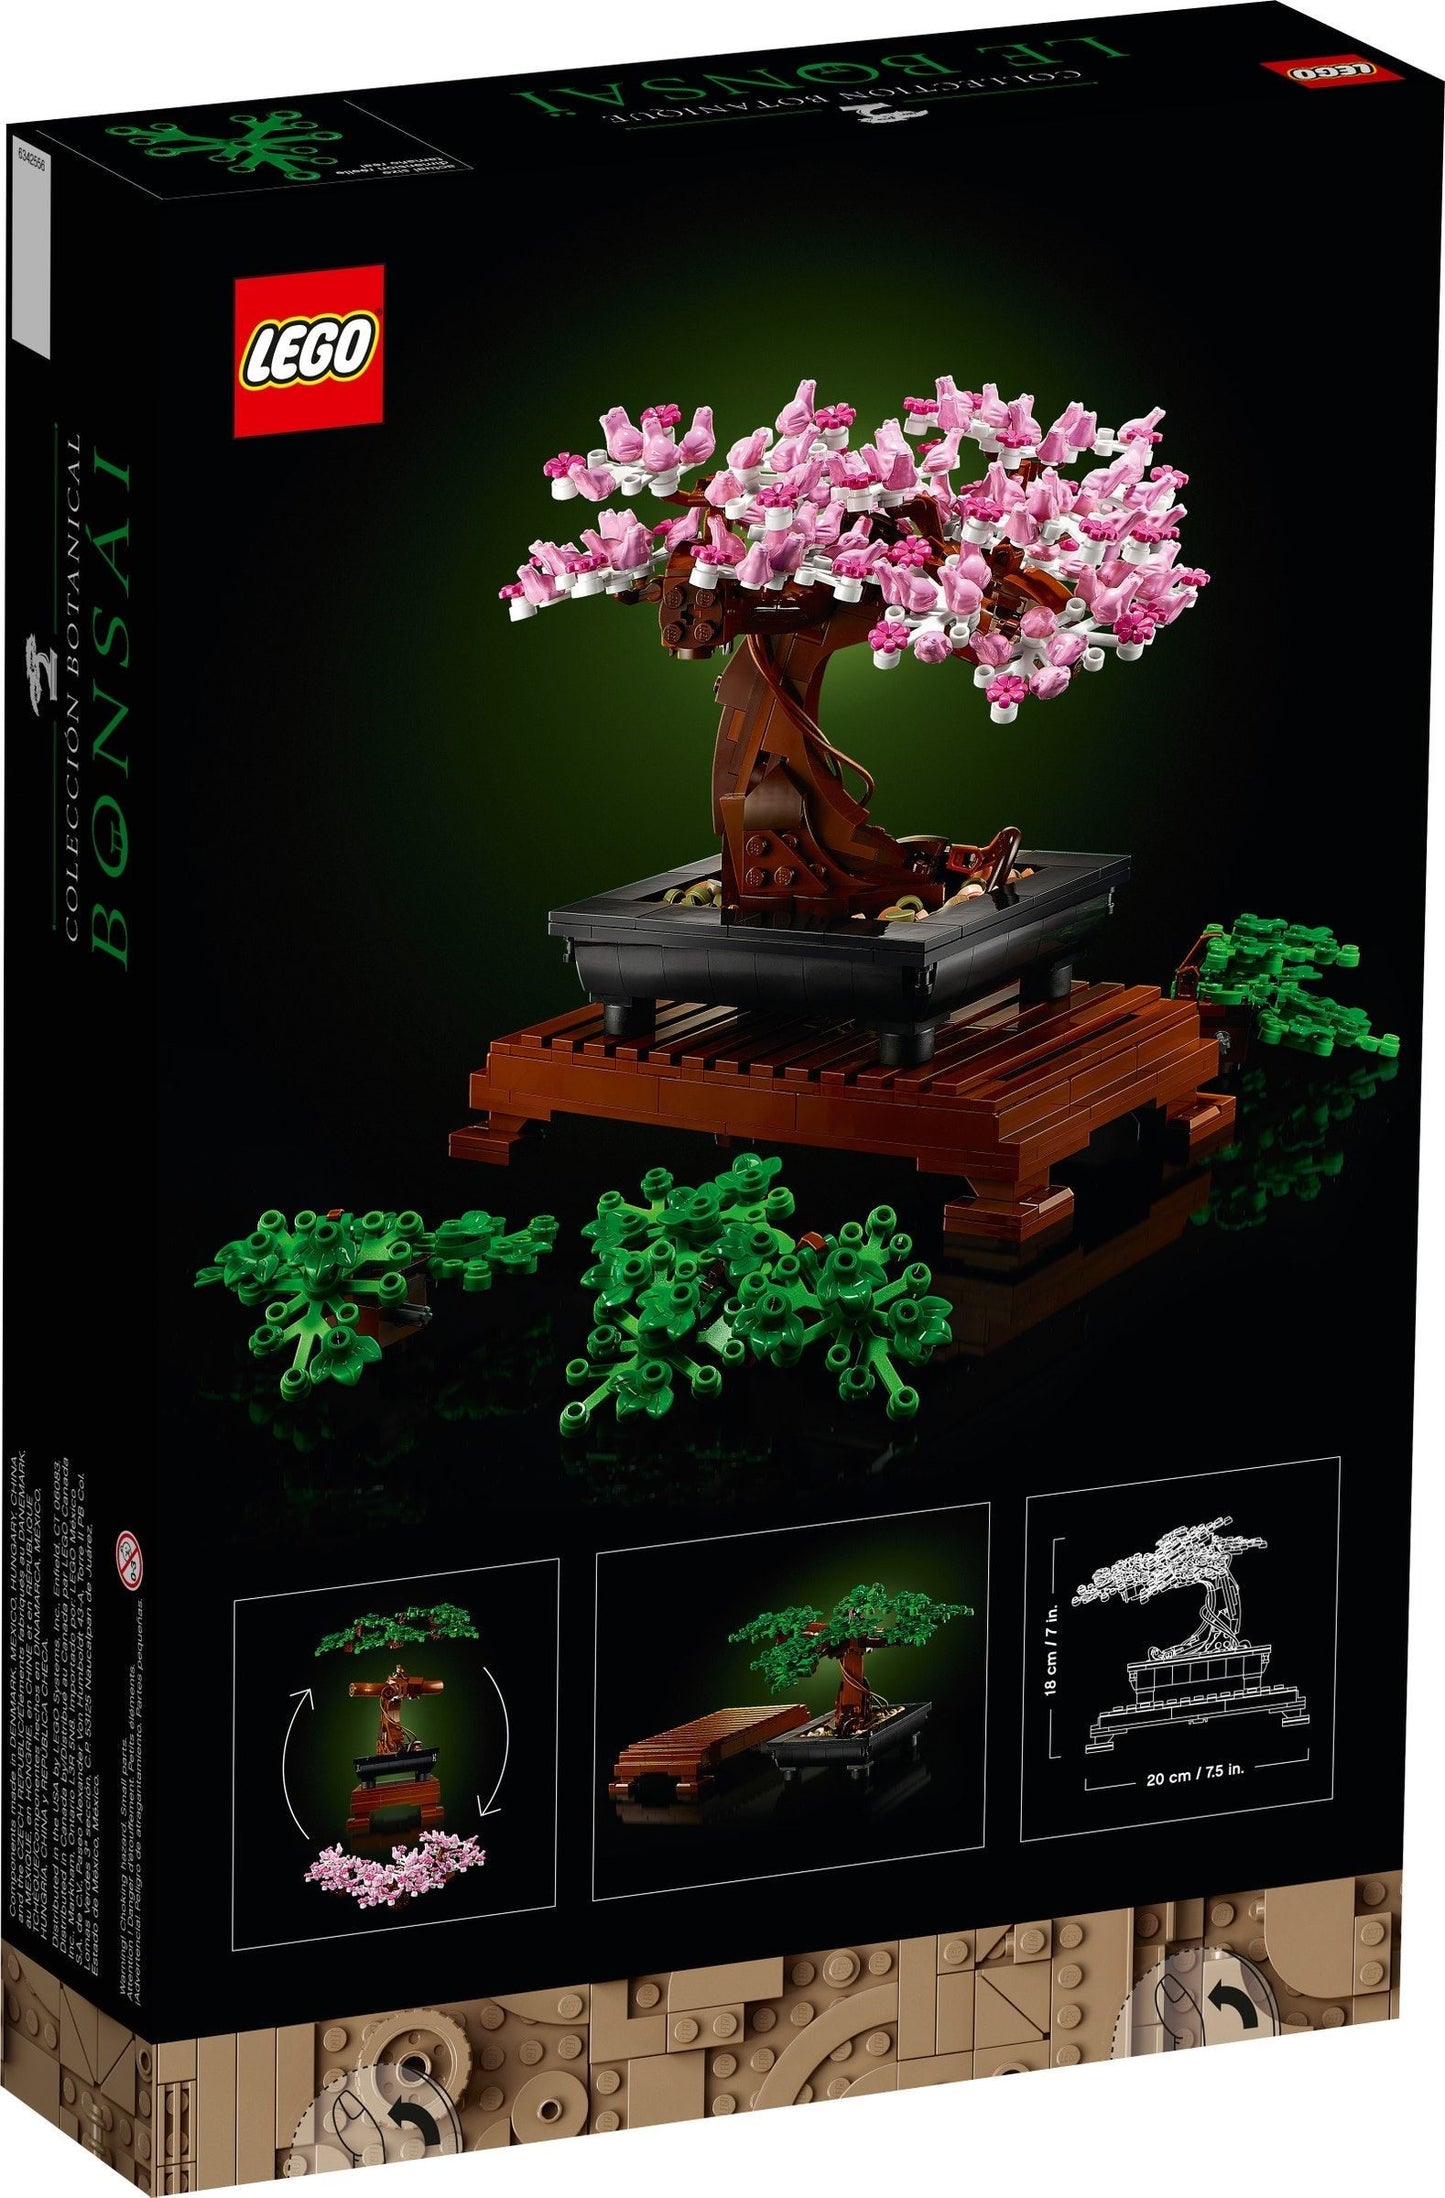 LEGO Creator Expert - Copac bonsai